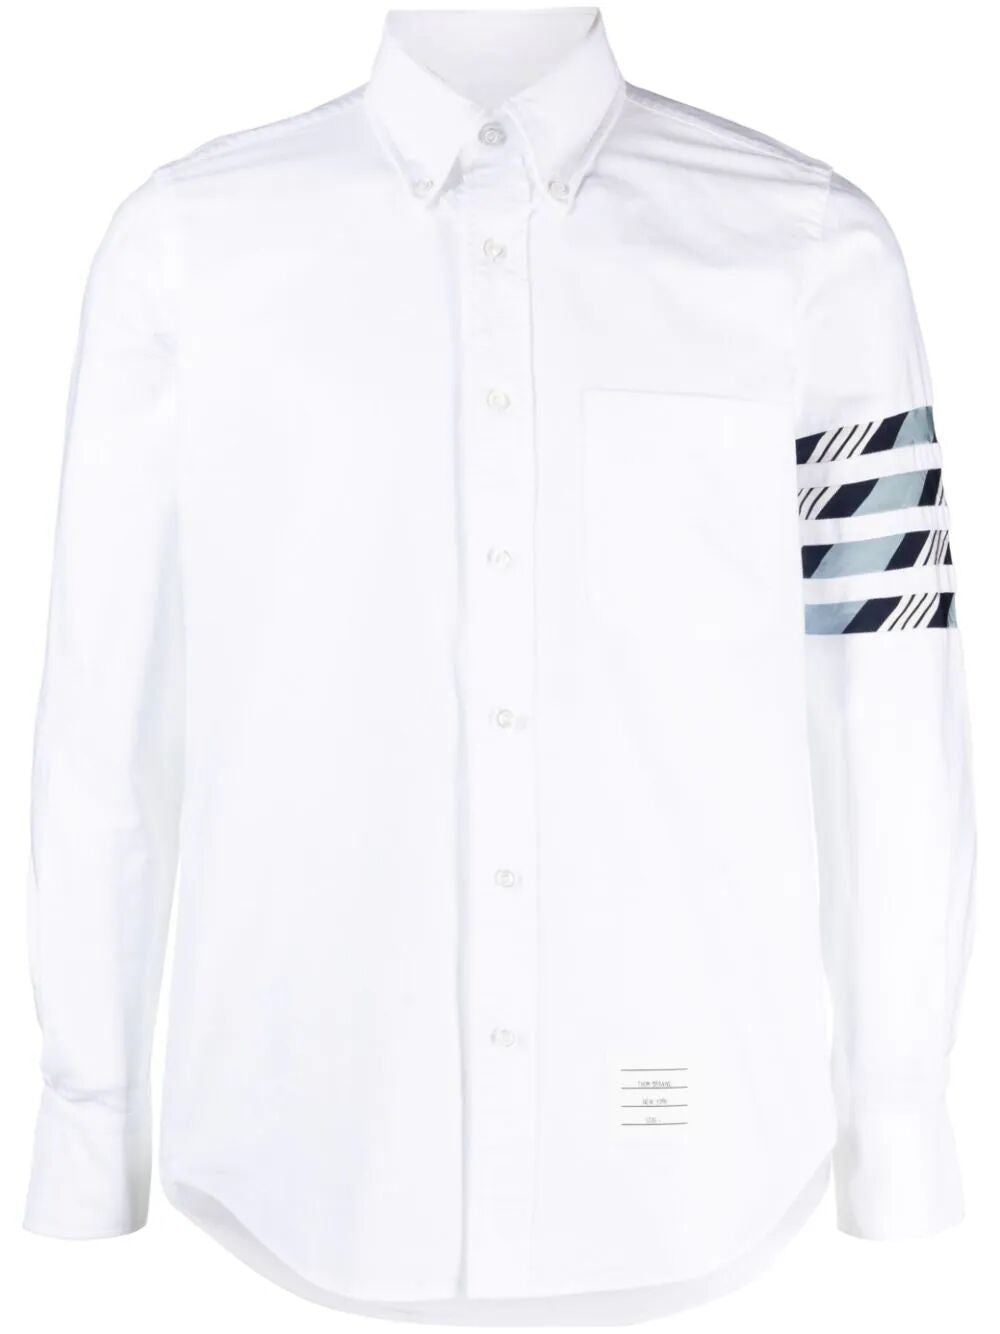 Men's 4 Bar Striped Cotton Shirt - White